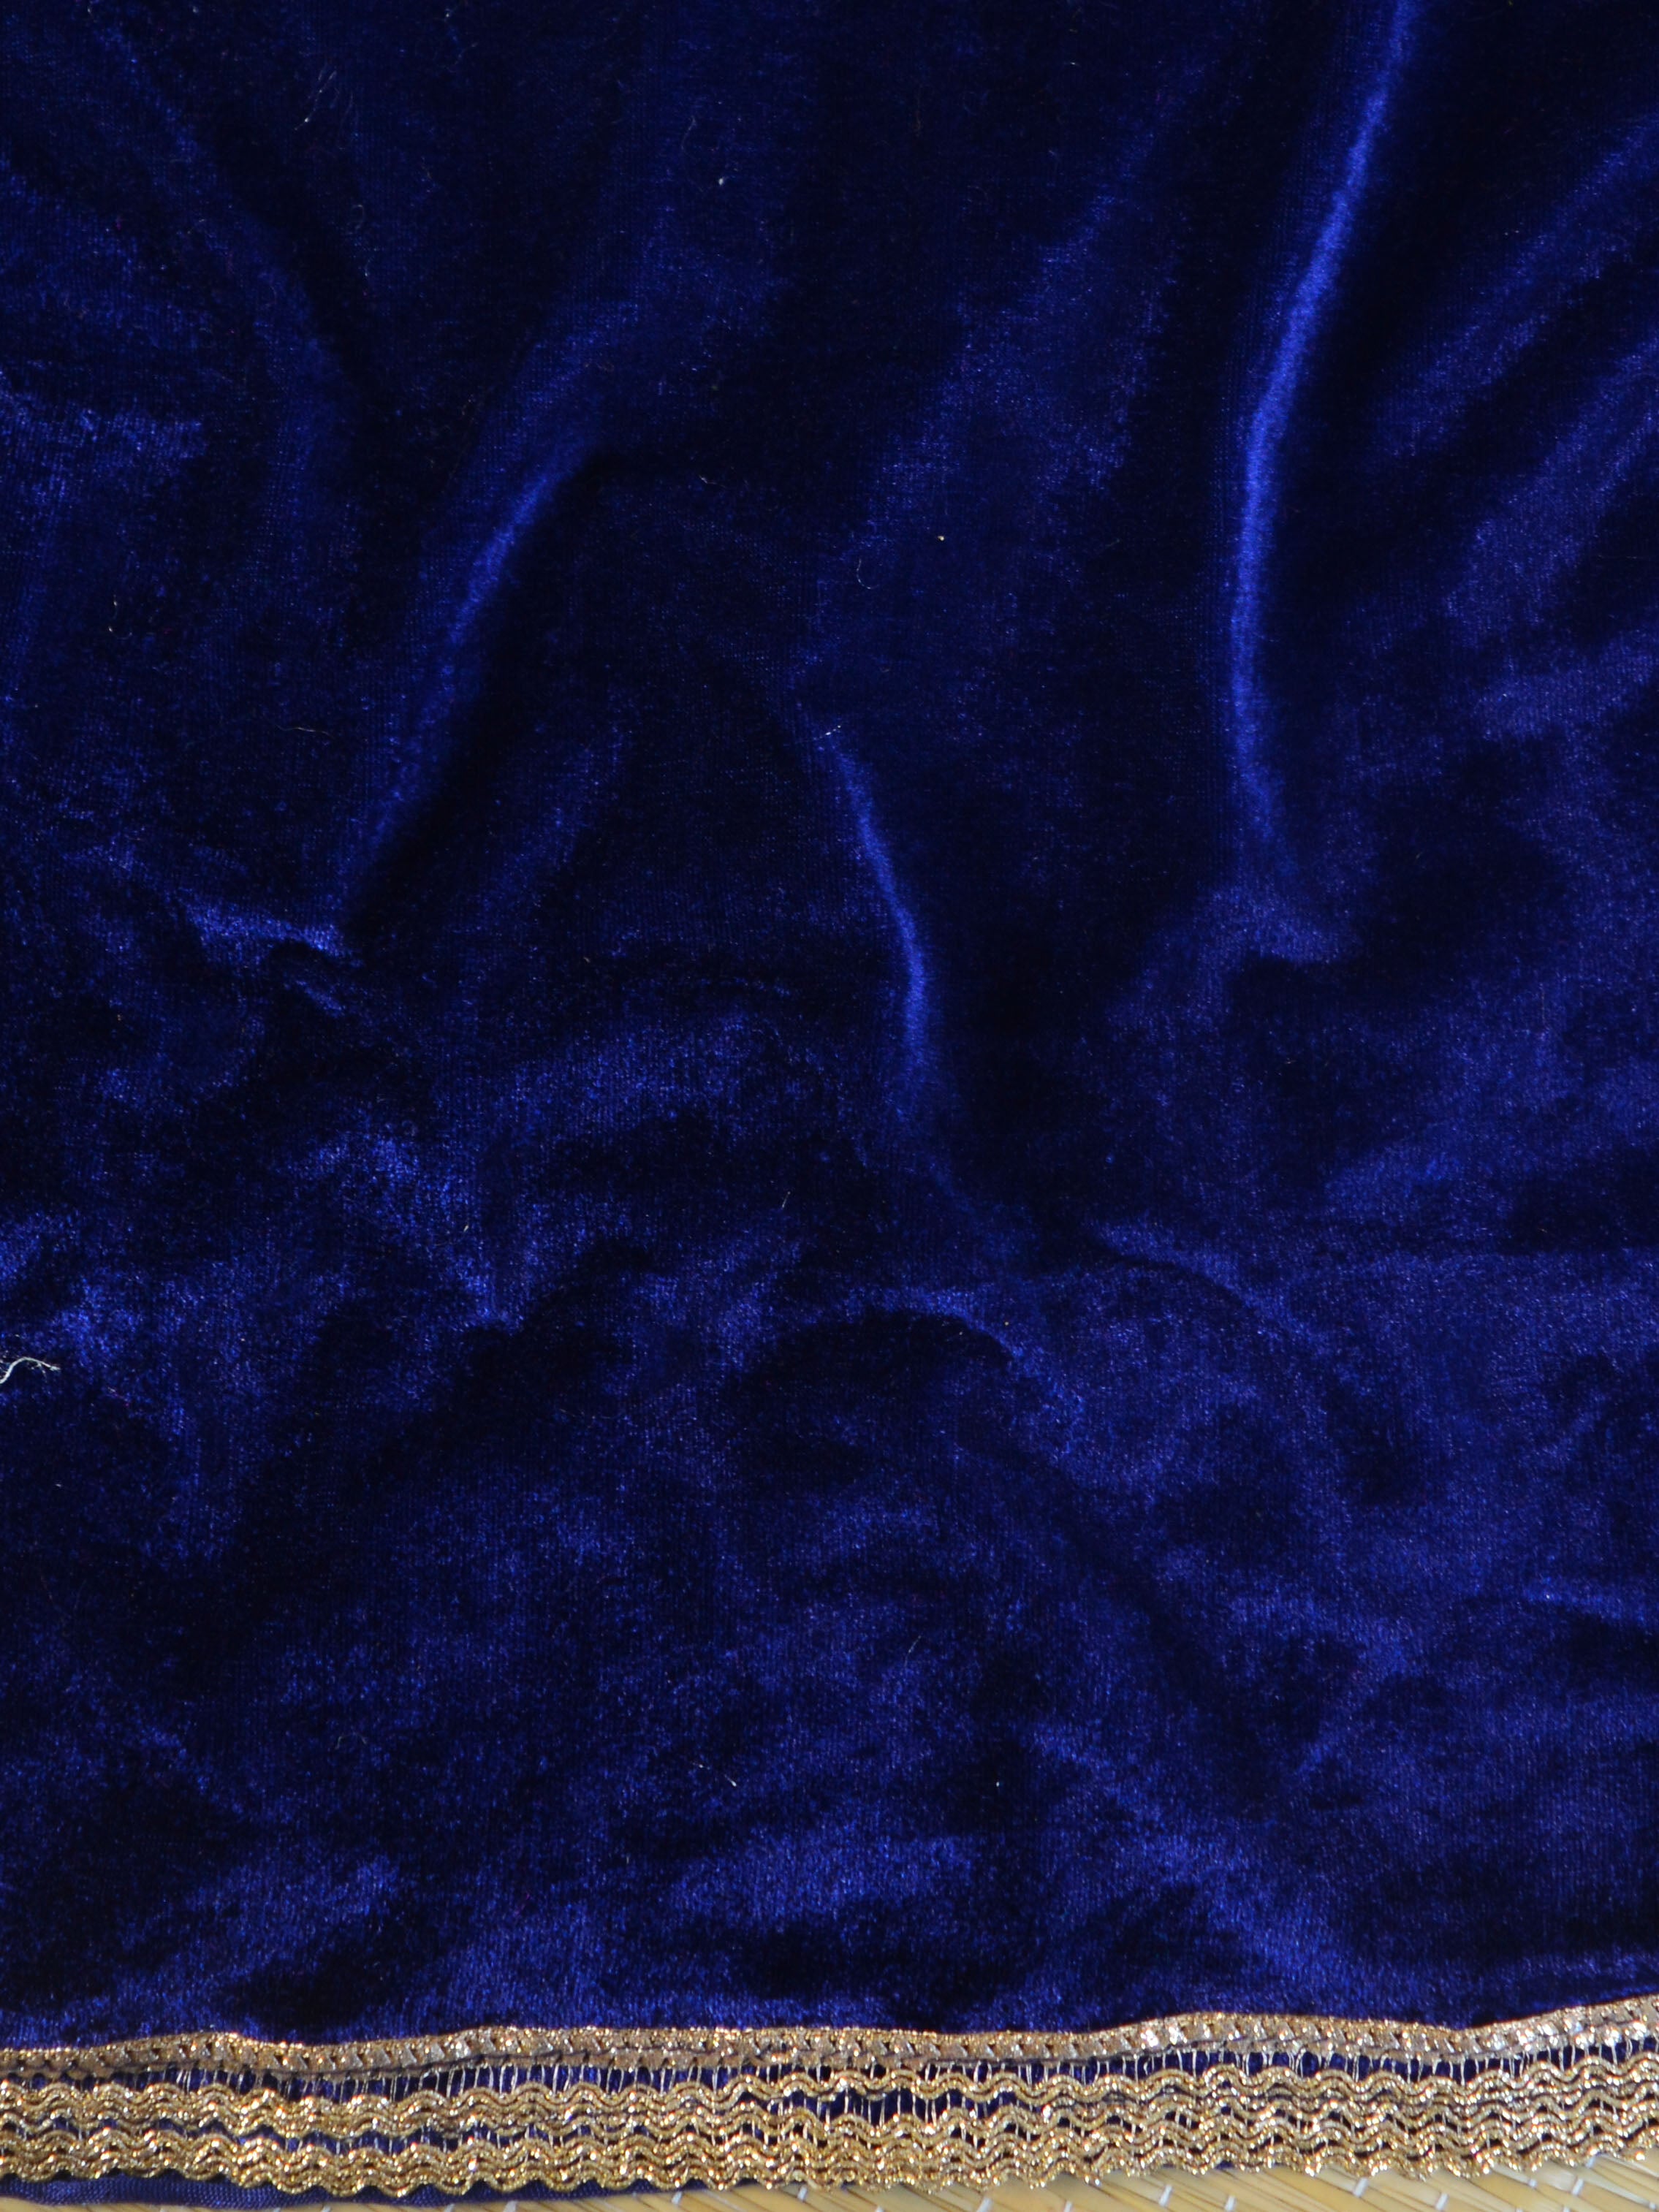 Banarasee Hand-Embroidered Velvet Salwar Kameez Set-Blue